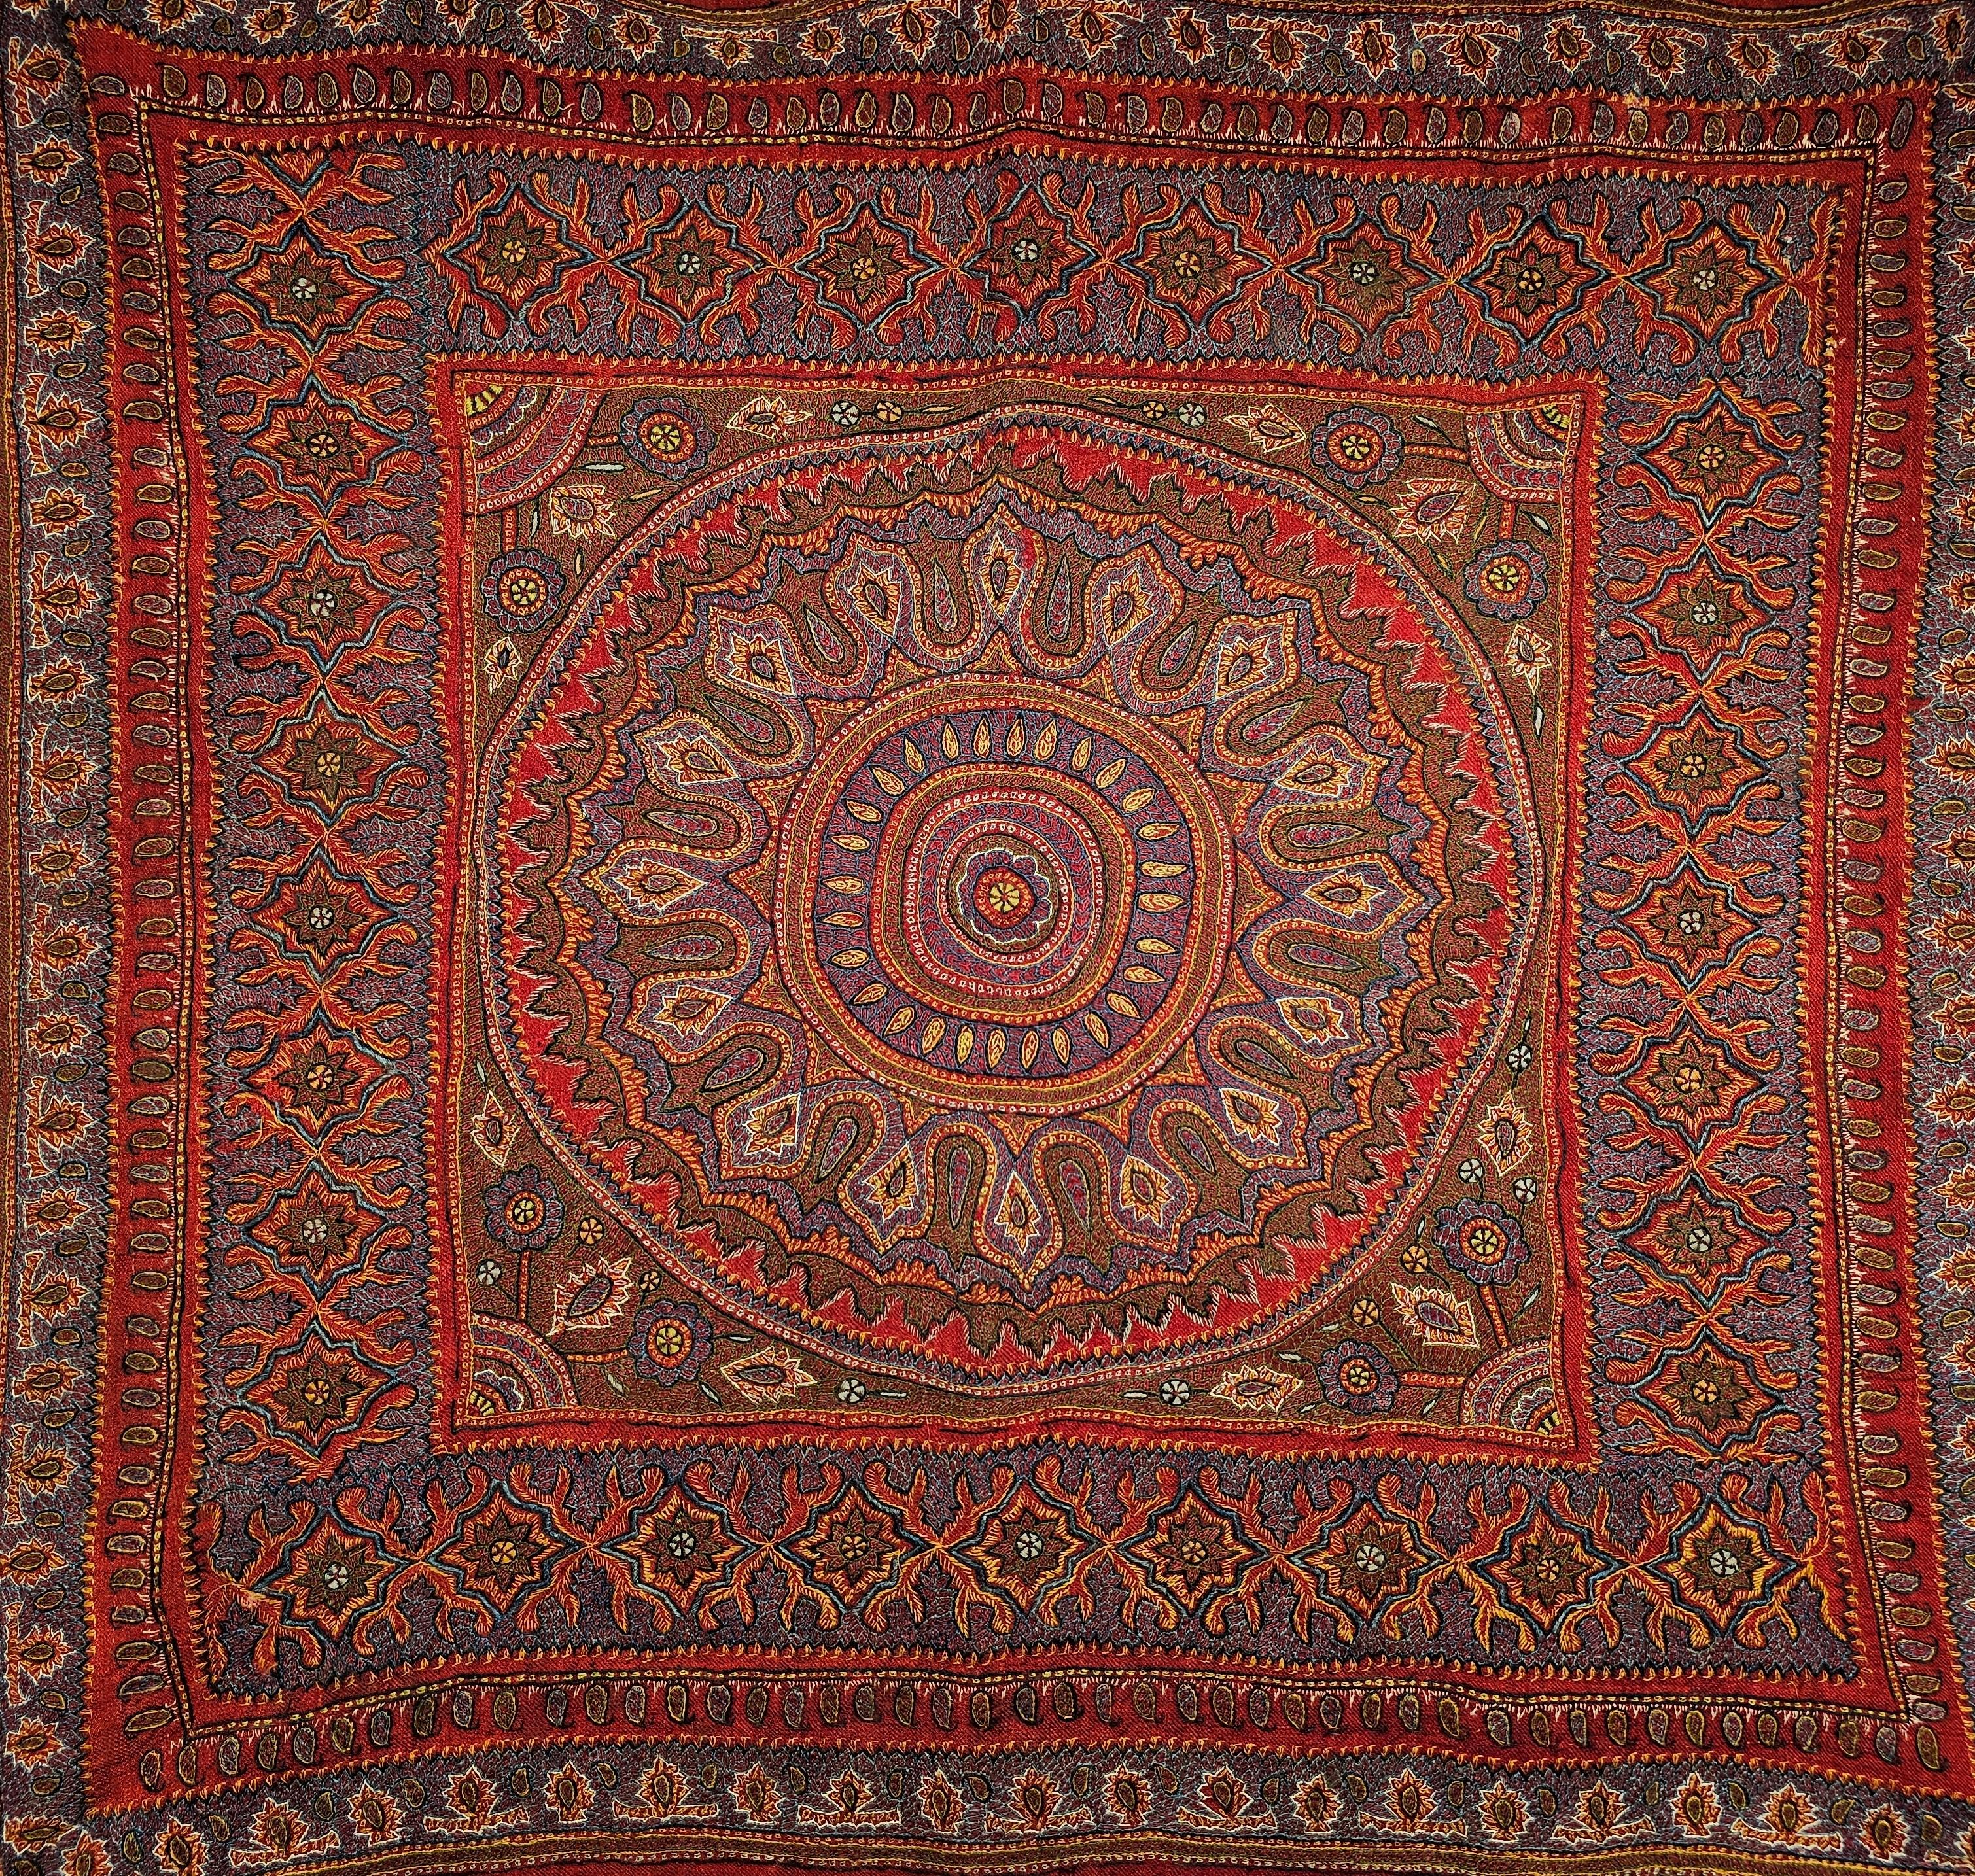 Die charakteristische persische Kerman-Suzani (Termeh-Stickerei auf Persisch) stammt aus der alten Stadt Kerman in Persien. Der handgestickte Wandteppich ist auf einem roten Stoffgrund mit Stickereimustern in Blau, Lila, Gelb und Braun. Das